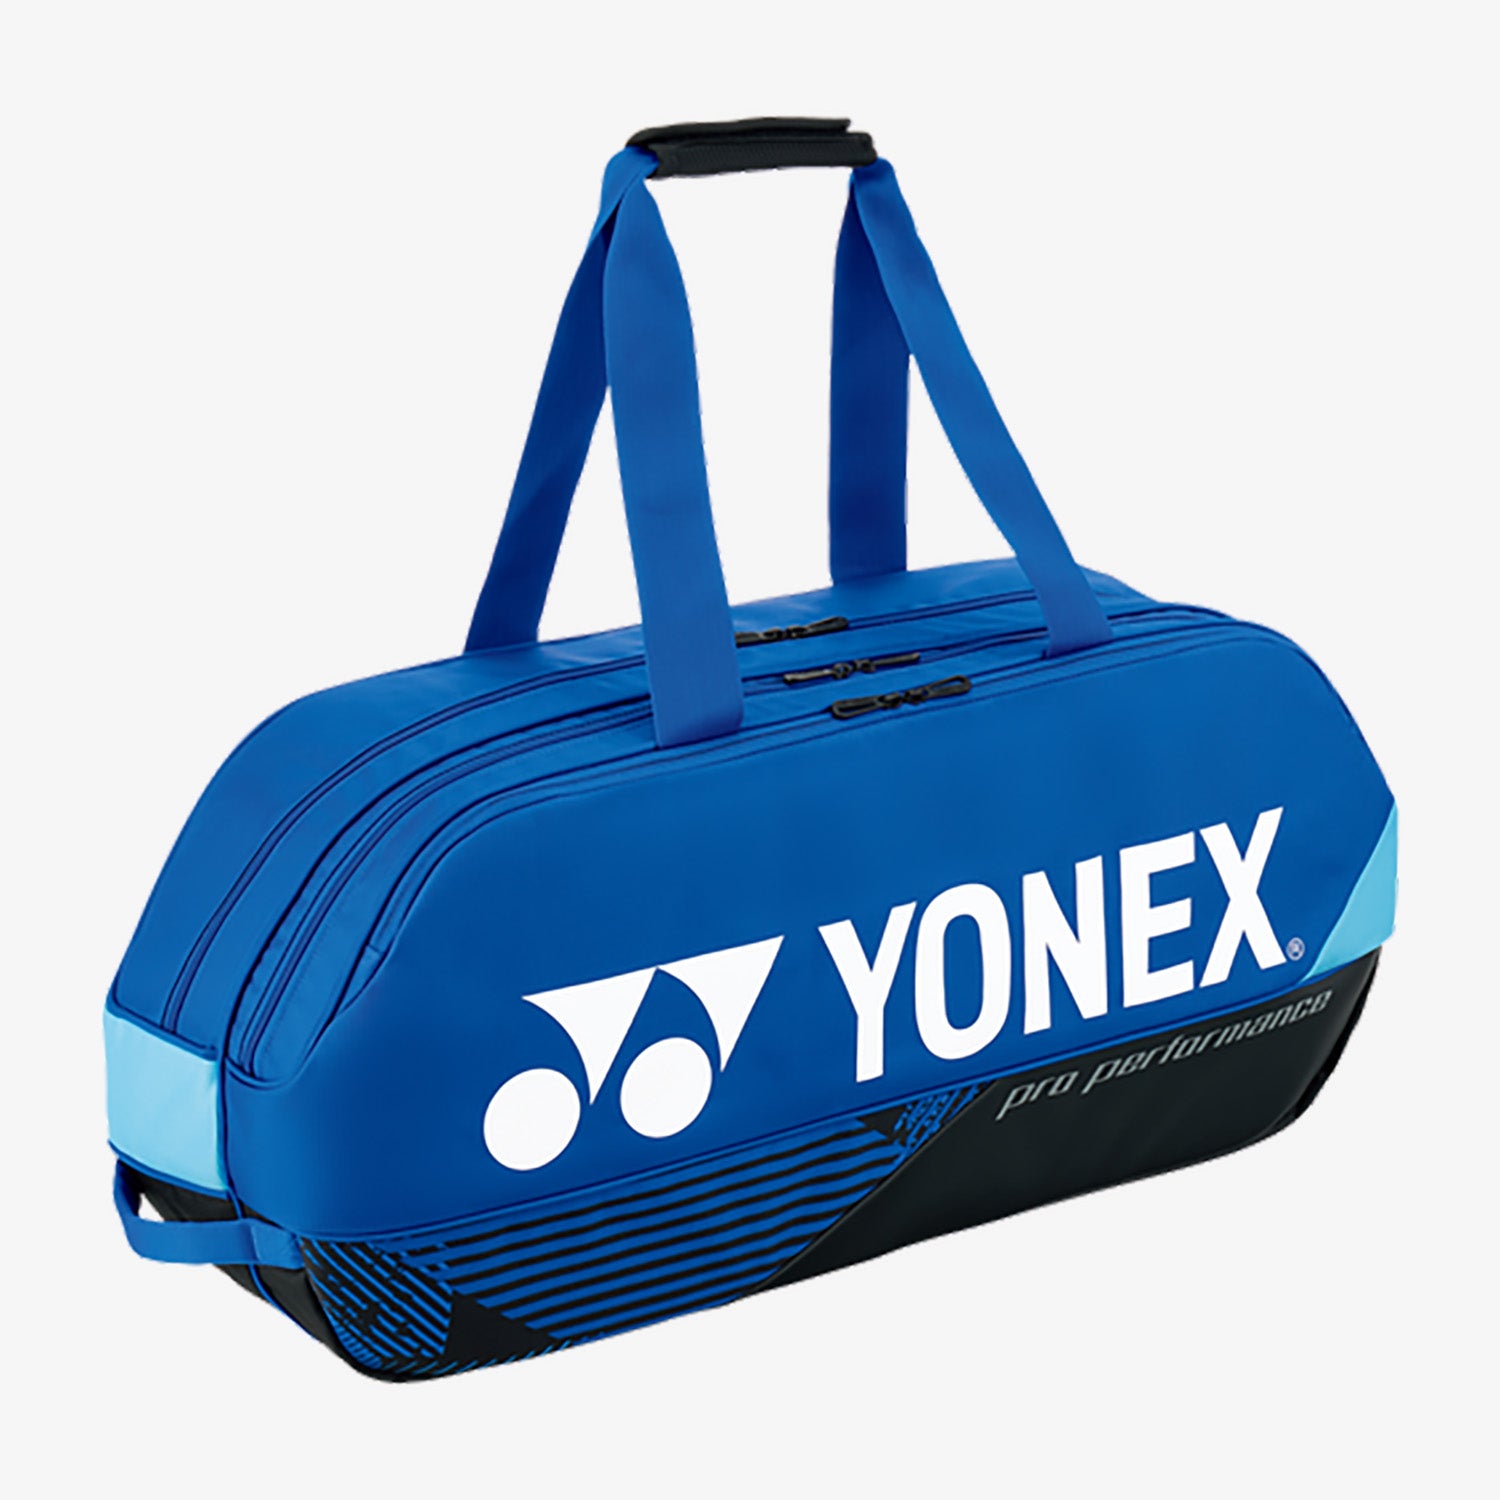 Yonex BAG92431WCOBL (Cobalt Blue) 6pck Pro Tournament Badminton Tennis Racket Bag